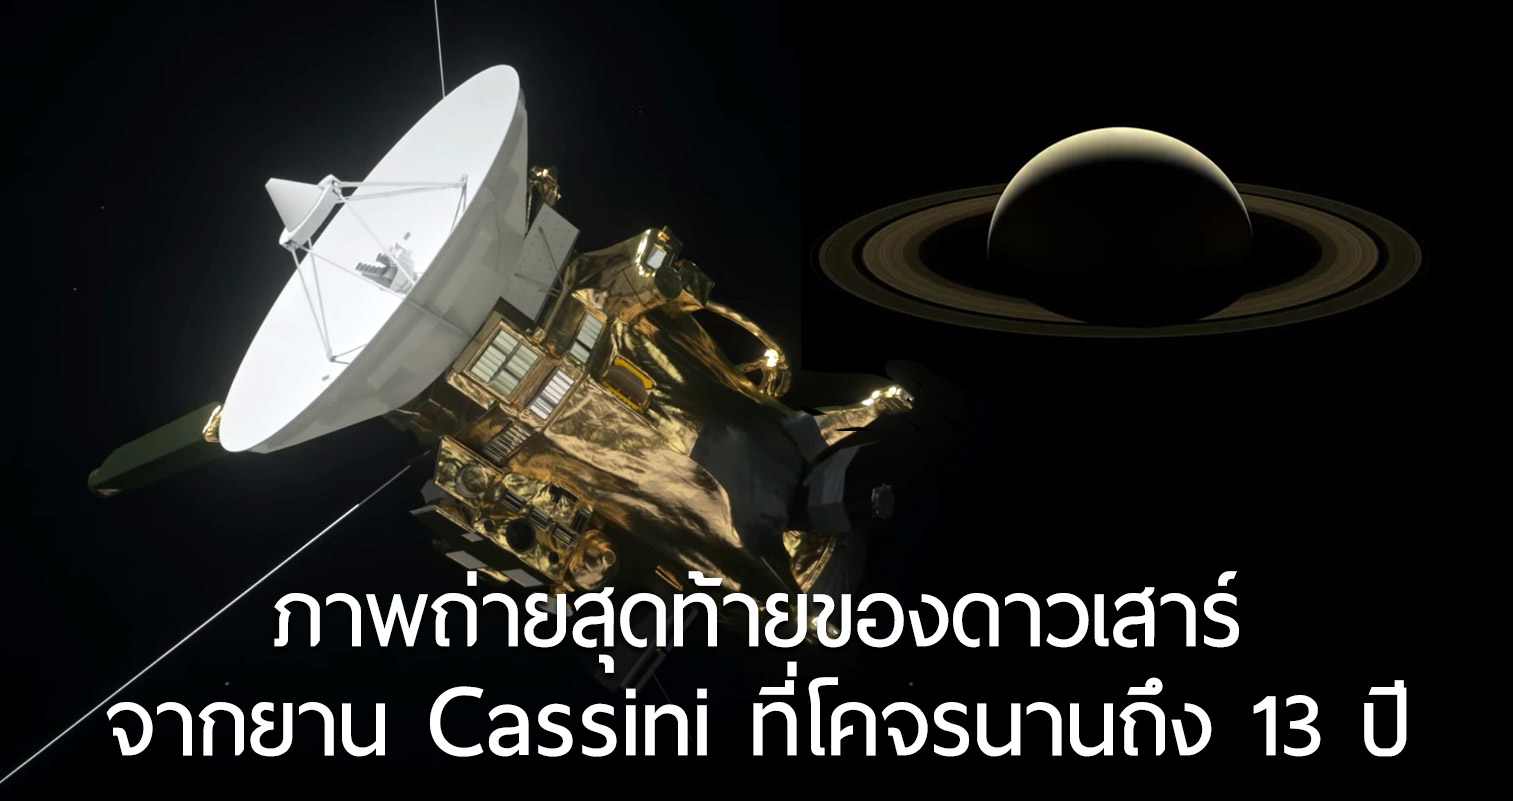 ภาพสุดท้ายของ ‘ดาวเสาร์’ จากยาน Cassini ที่อยู่ในวงโคจรของดาวเคราะห์นี้นานกว่า 13 ปี